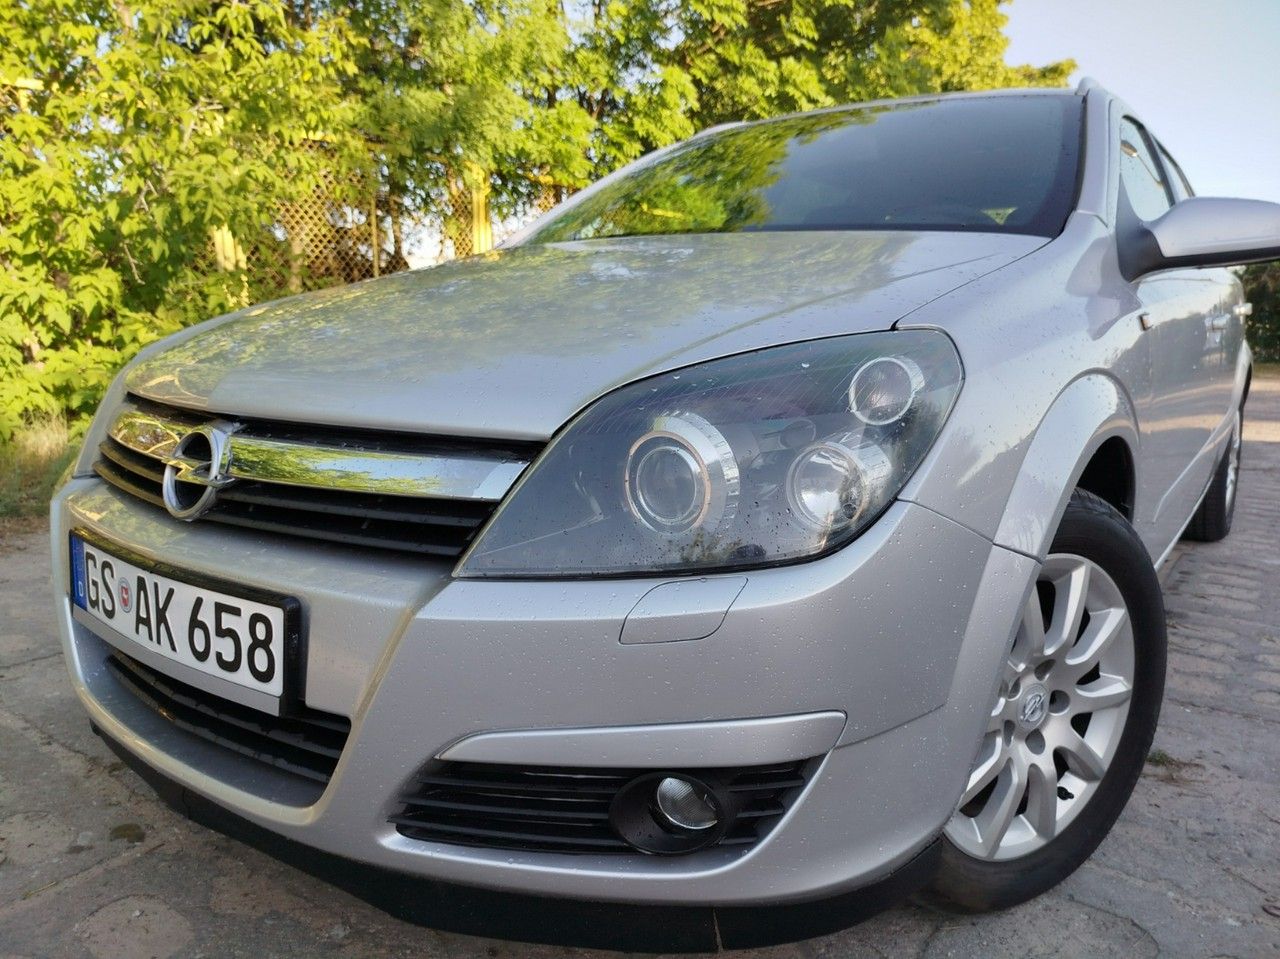 Opel Astra 1,8 ben ksenon navi super stan W CENIE WSZYSTKIE OPLATY